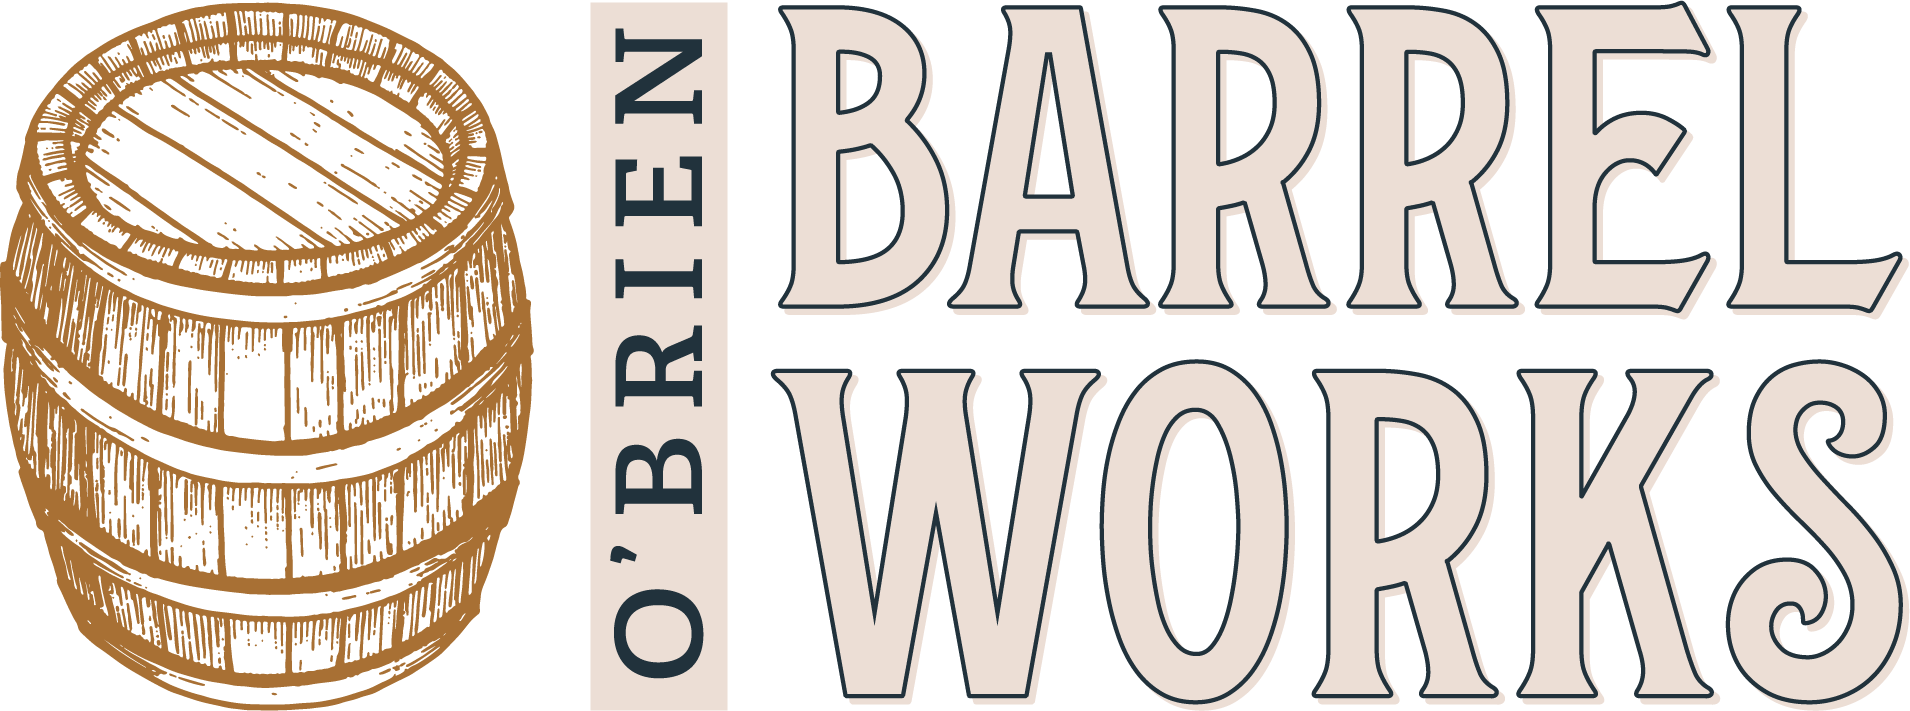 Obrien Barrel Works